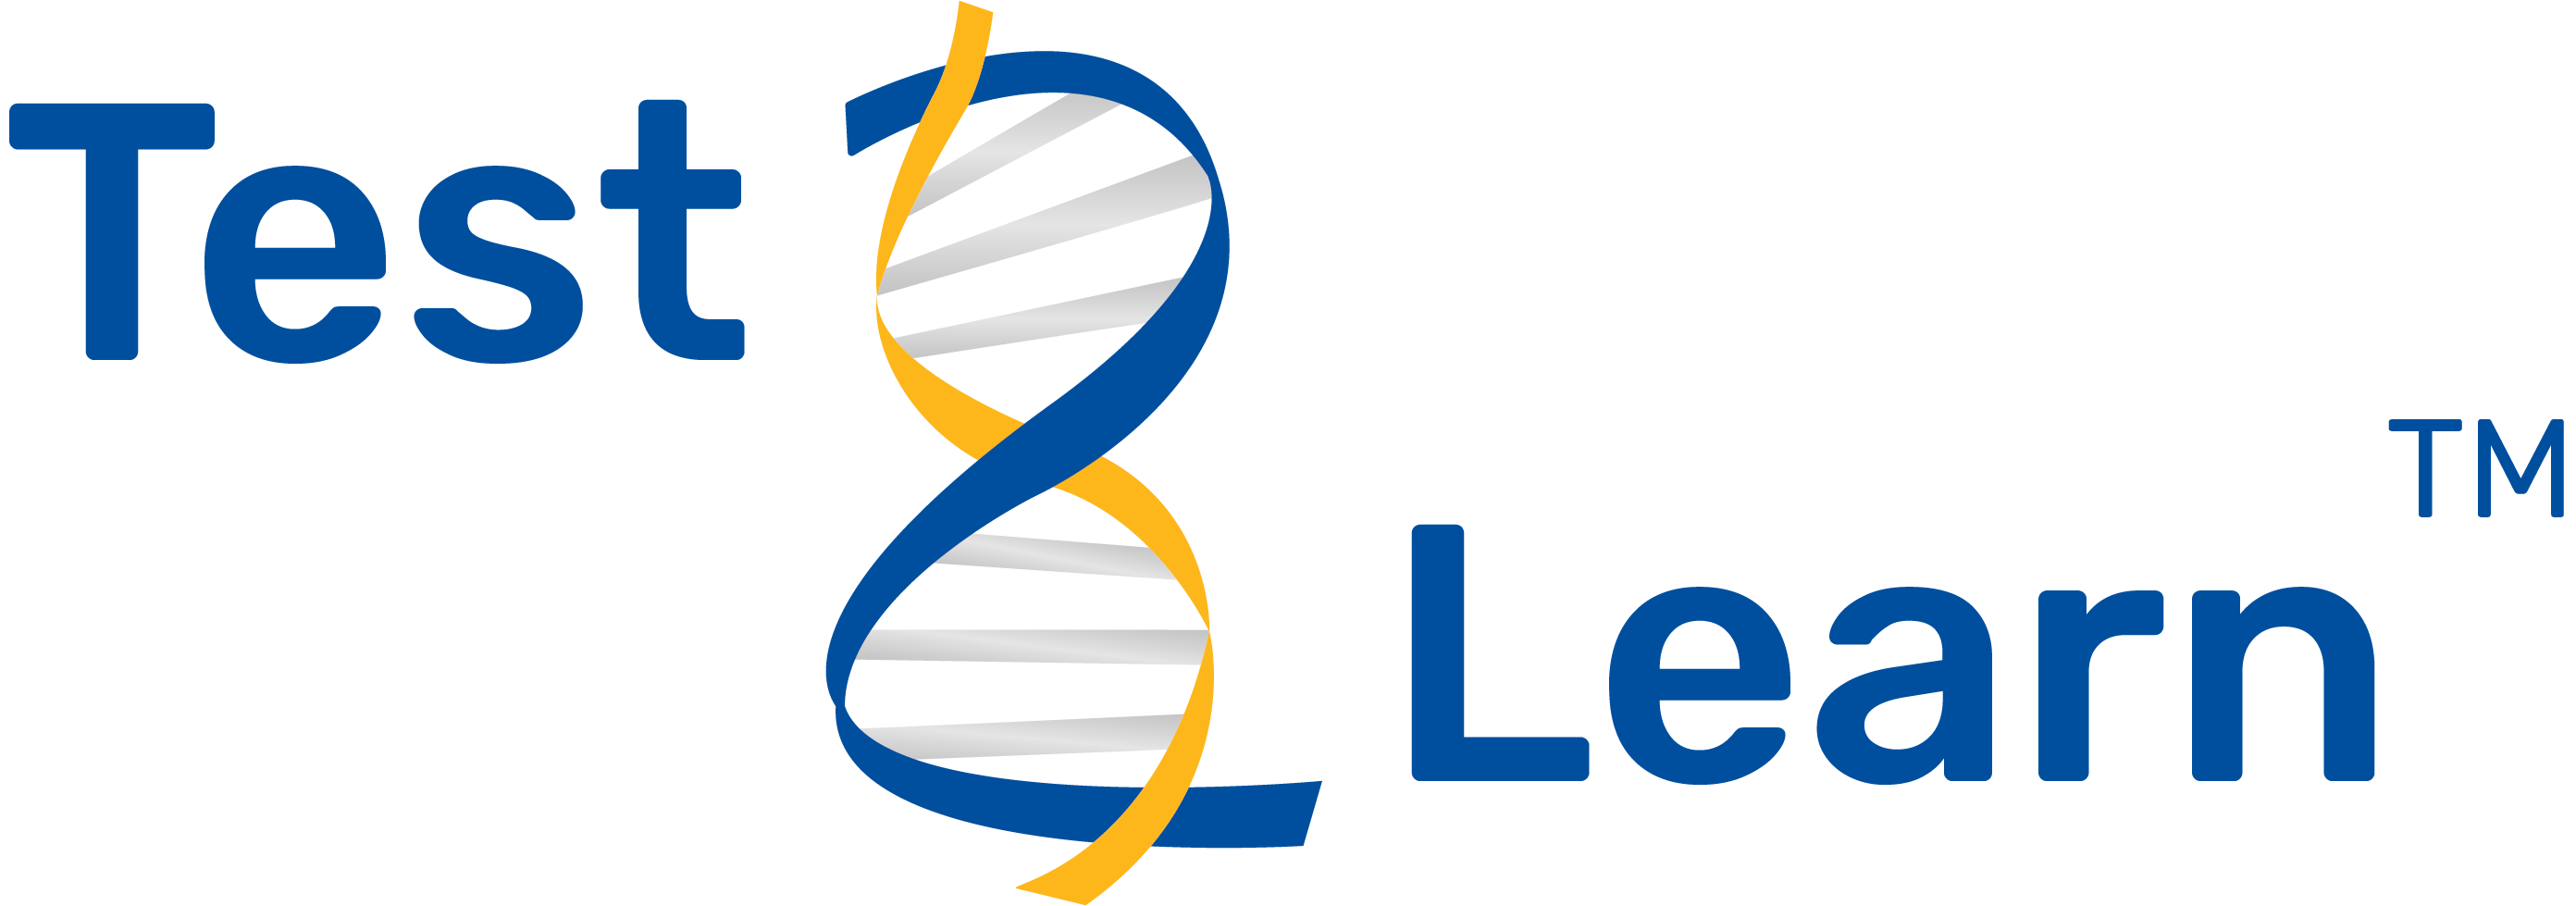 test2learn logo